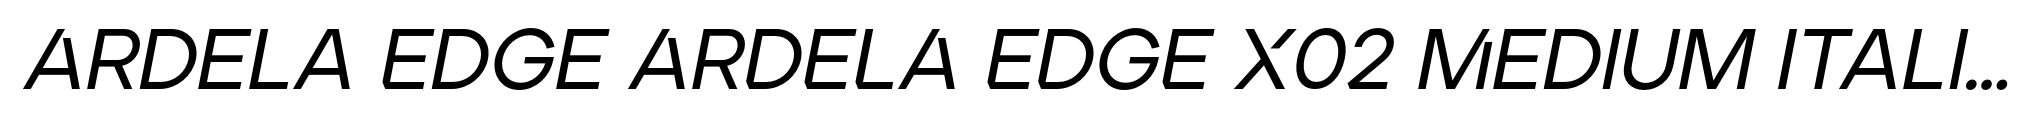 Ardela Edge ARDELA EDGE X02 Medium Italic image